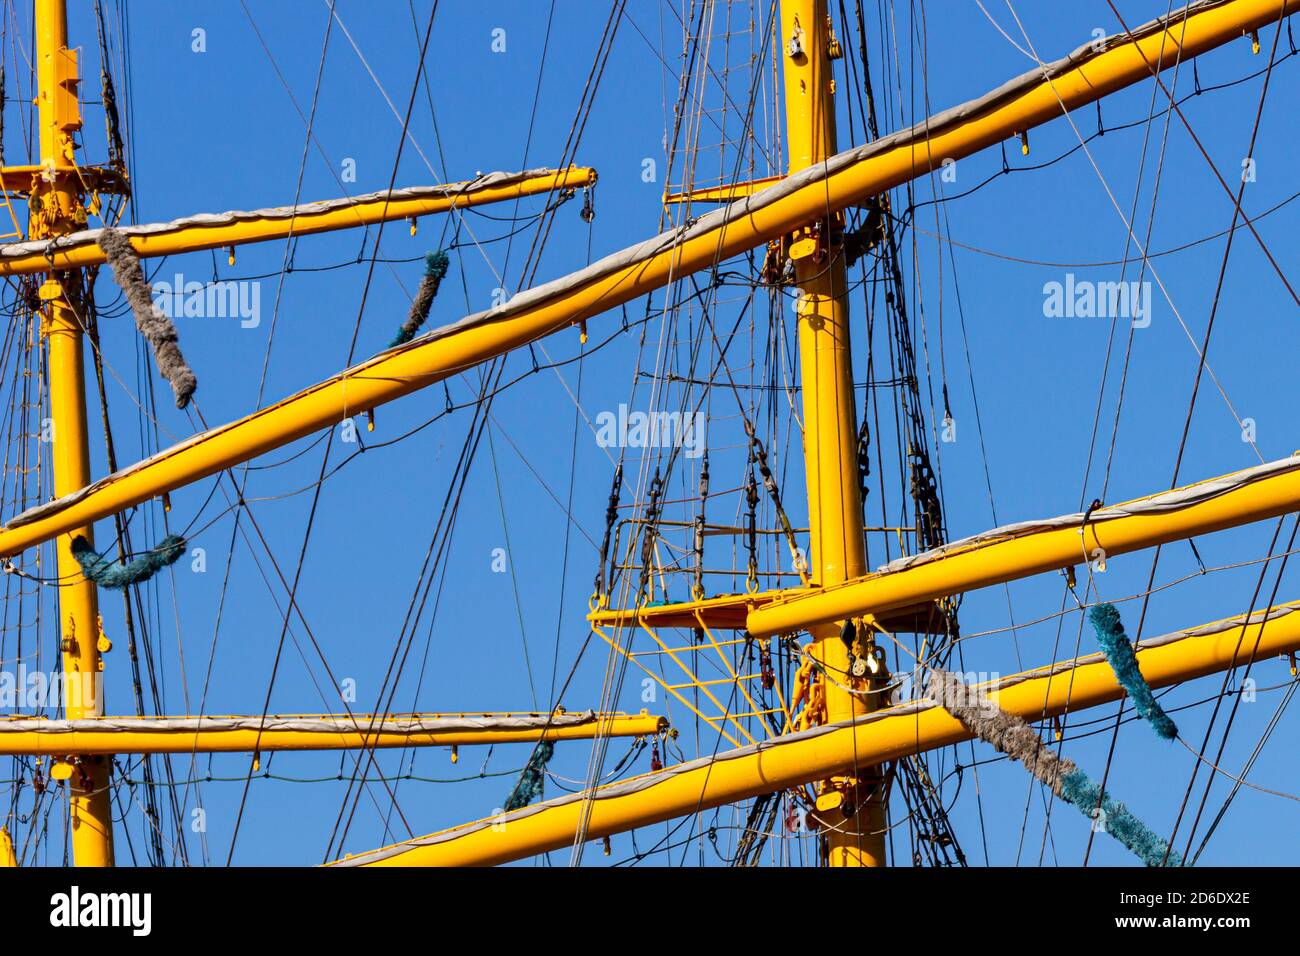 Takelage Ausrüstung eines Segelschiffes an einem sonnigen Sommertag gegen einen blauen Himmel. Stockfoto